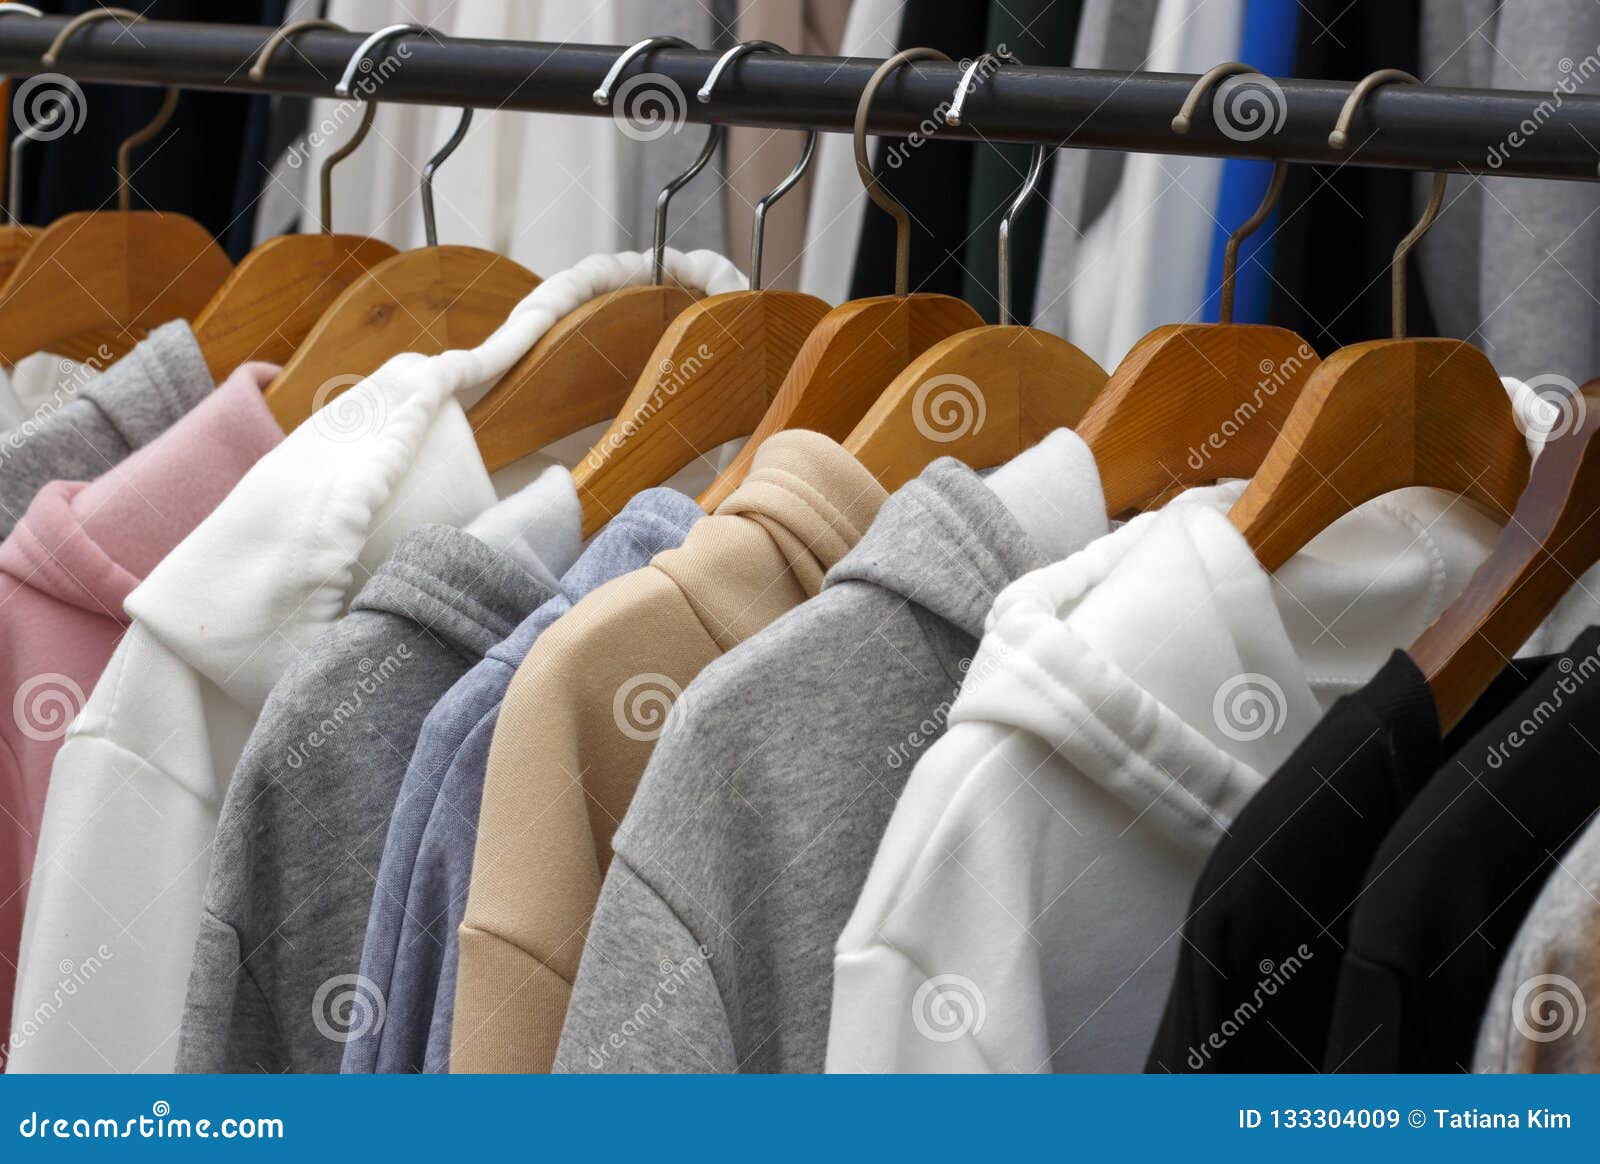 Sudaderas Con Capucha En Las En Una Tienda De Ropa, Primer Imagen de archivo - Imagen de consumerismo, ropas: 133304009